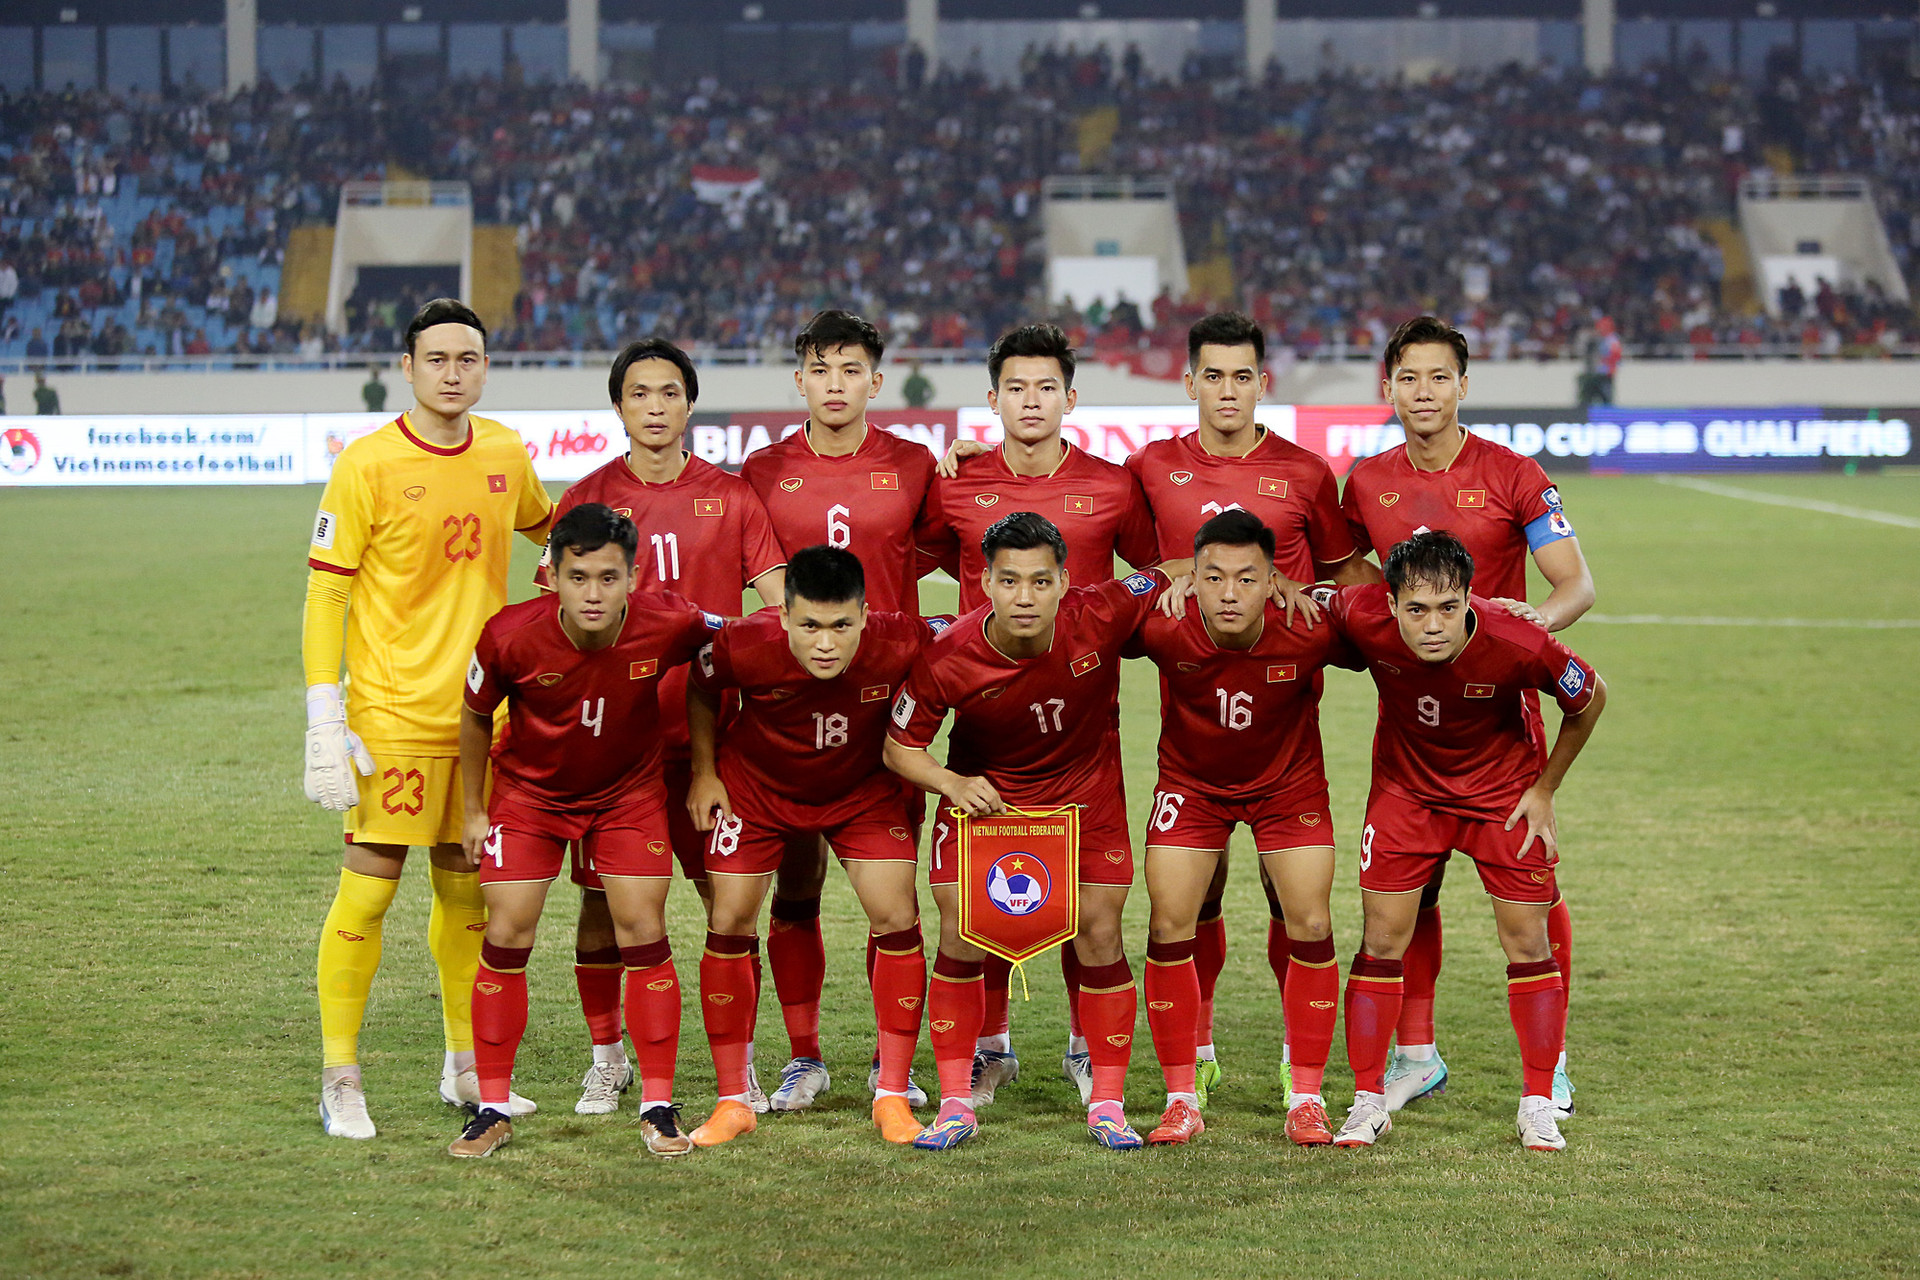 HLV Kim Sang Sik giữ lại bộ khung đội hình đội tuyển Việt Nam dưới thời ông Philippe Troussier - Ảnh: HOÀNG TÙNG